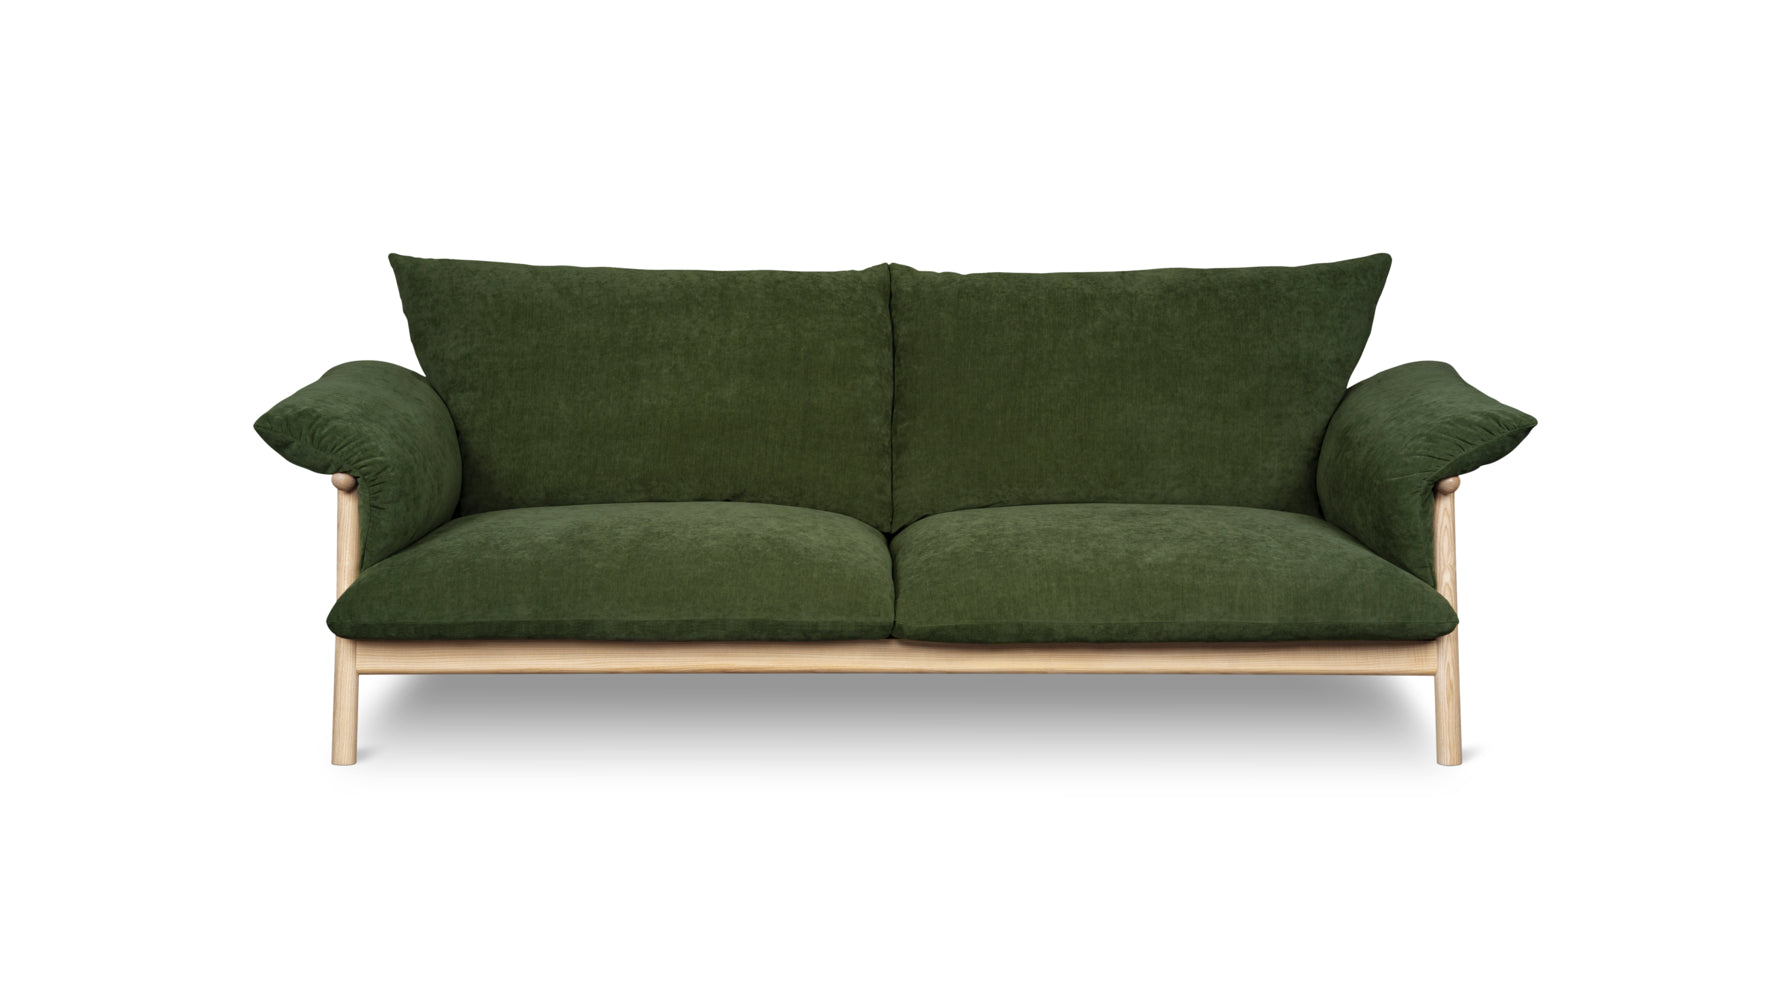 Pillow Talk Sofa, Moss - Image 1